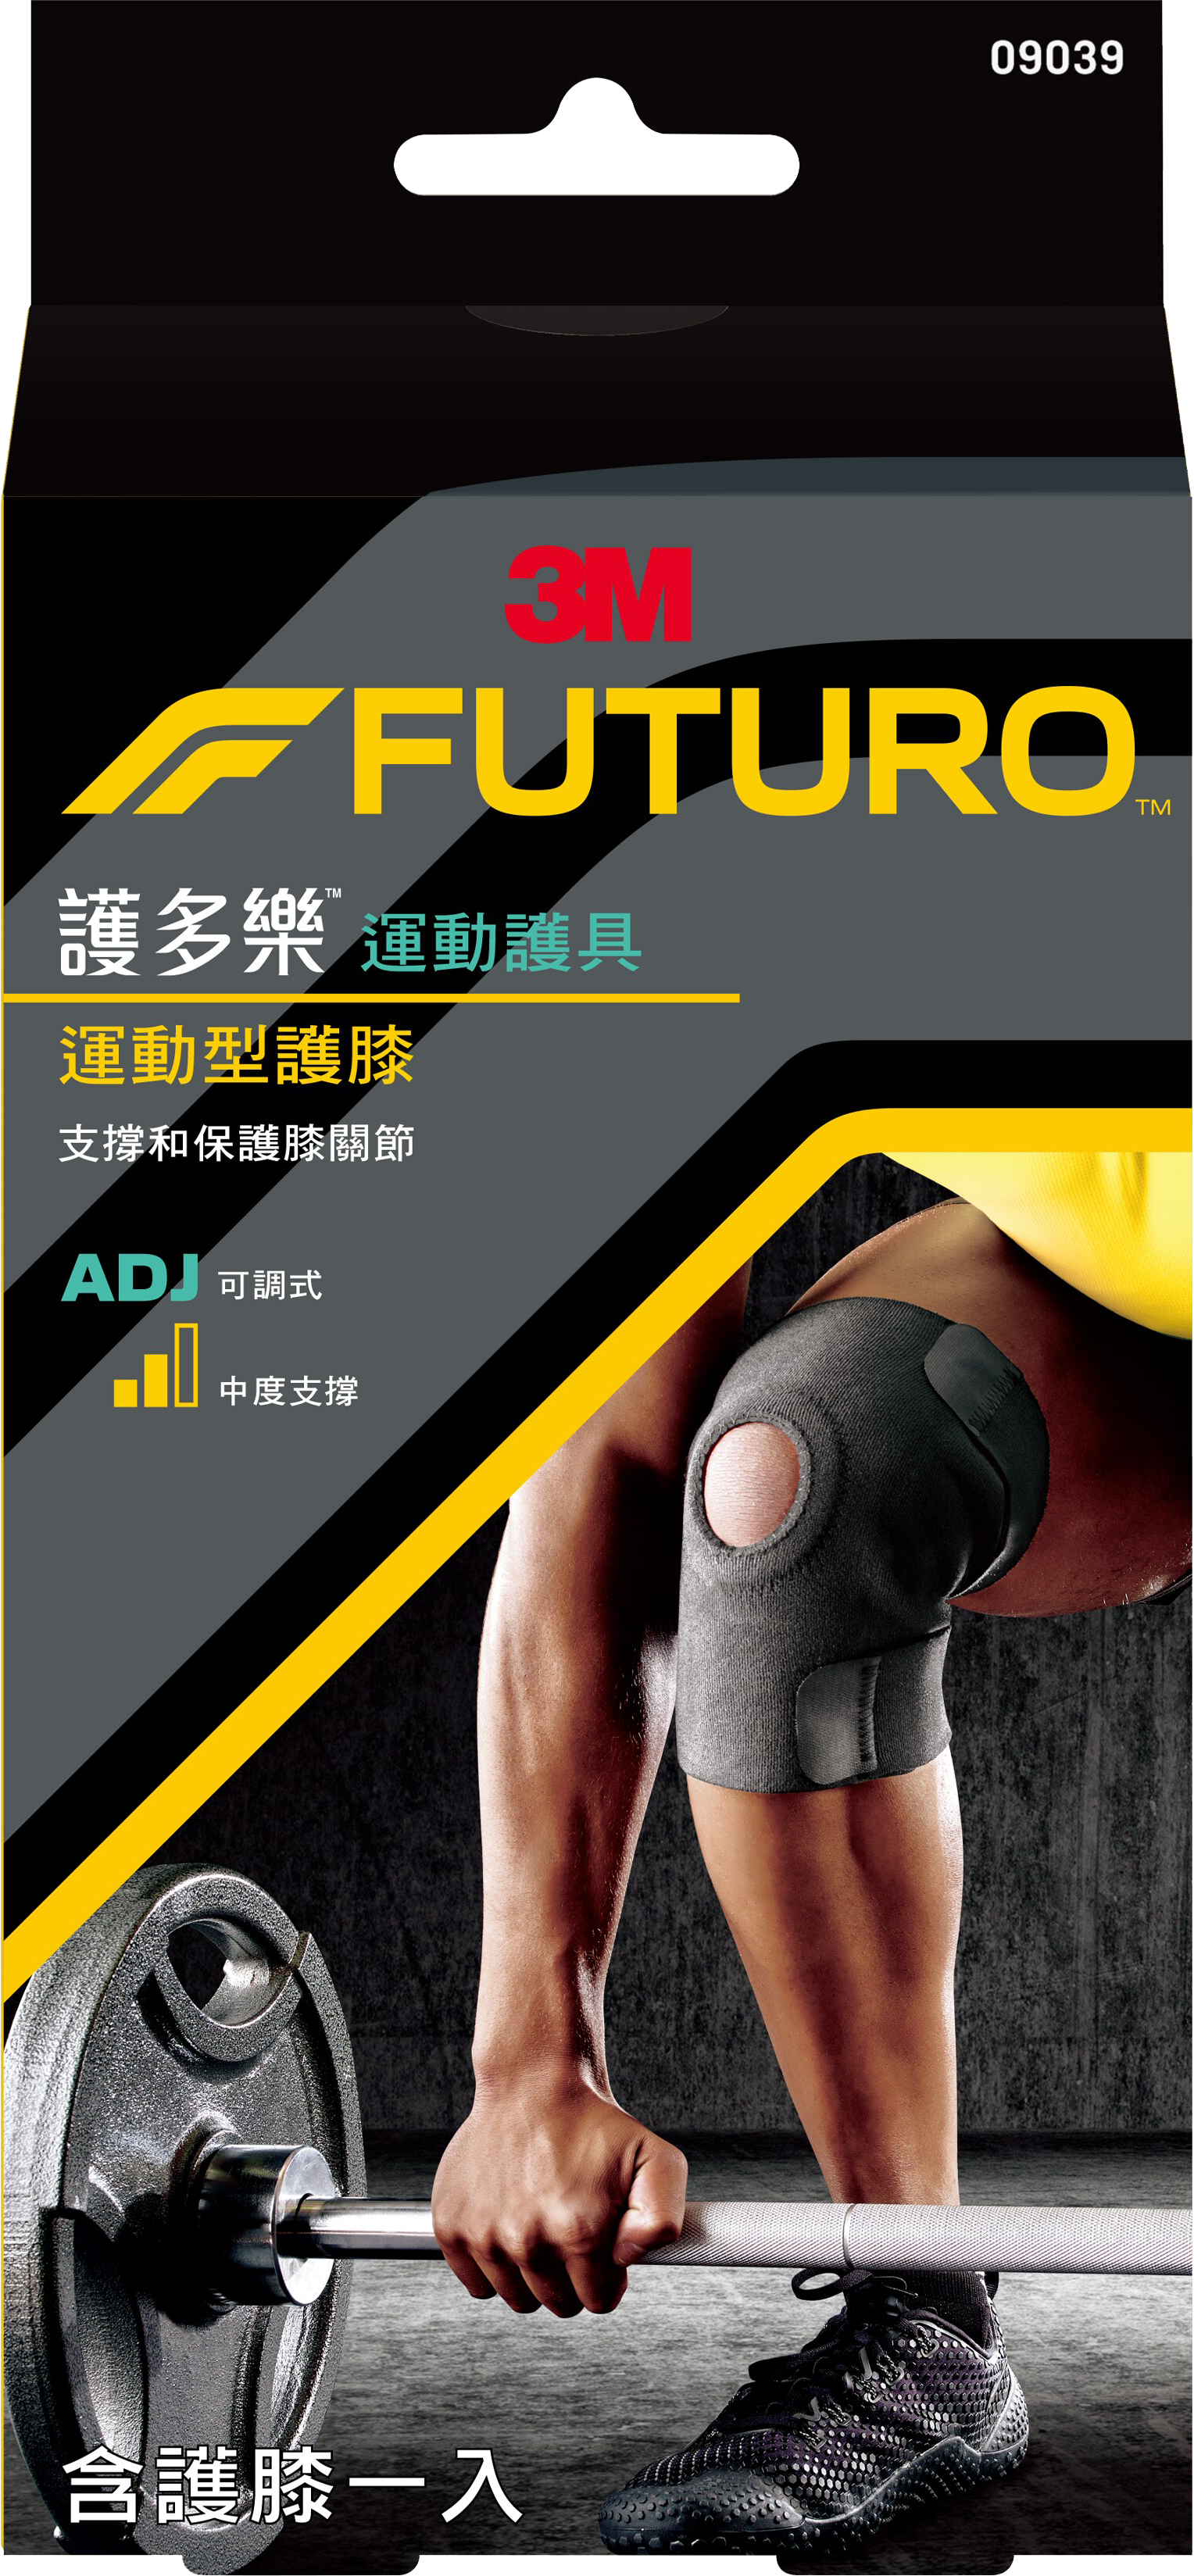 *限時優惠*【醫護寶】3M-FUTURO可調式運動型護膝